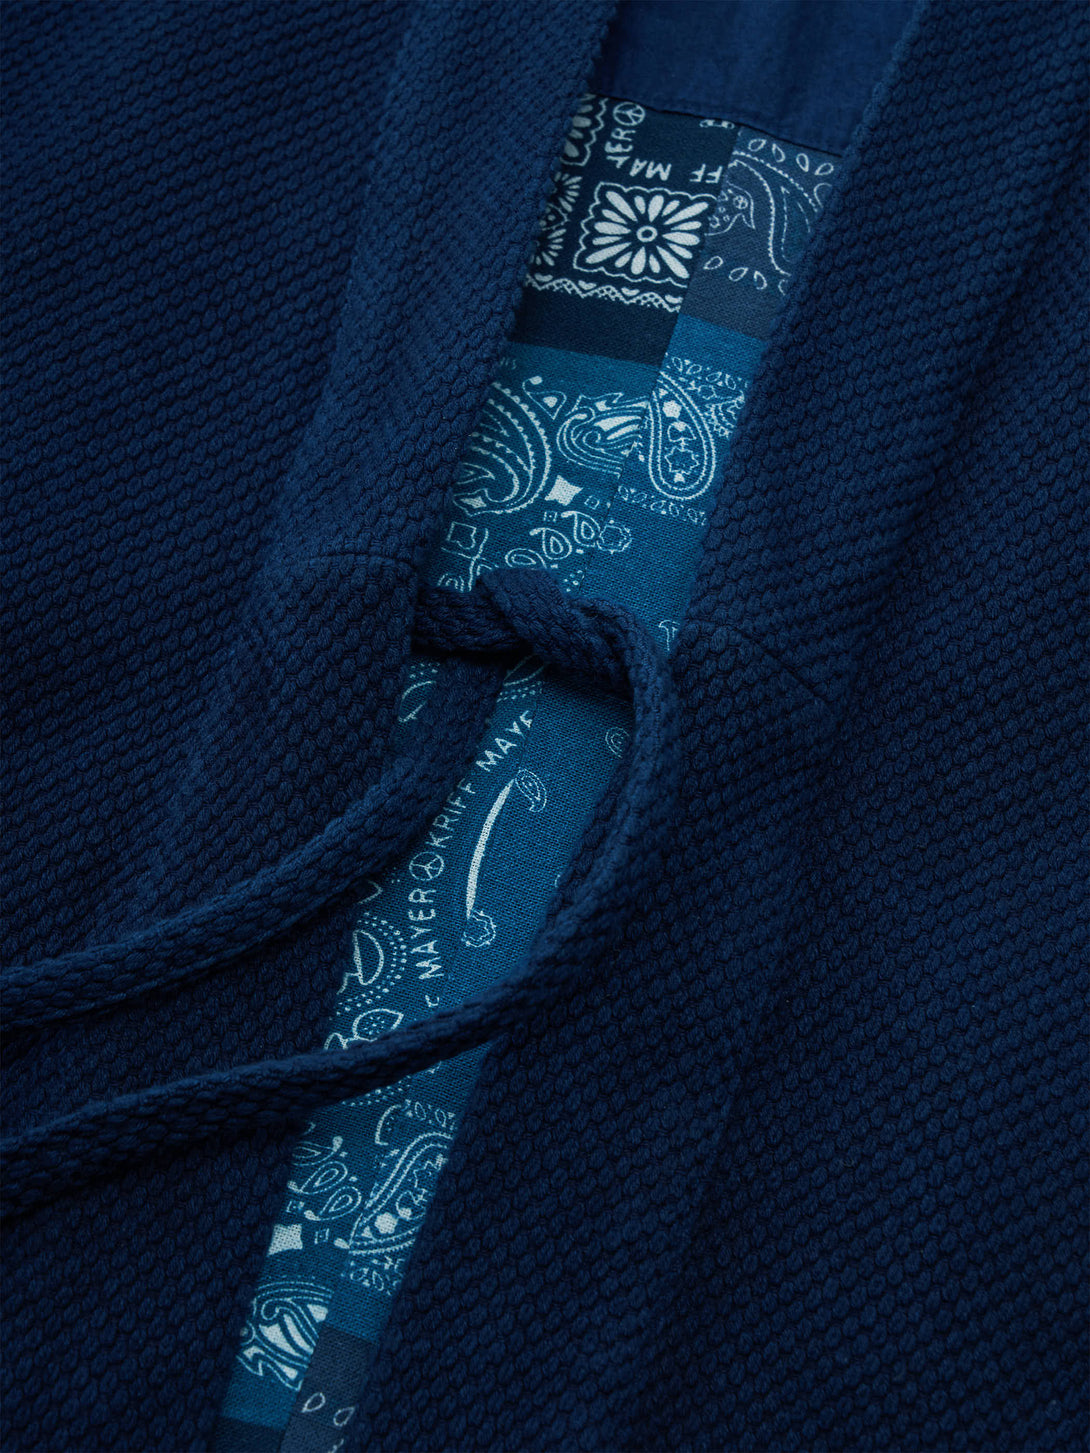 高級感のある刺し子織り生地の美しい陰影が特徴の藍染半纏、丁寧に織られたディテール